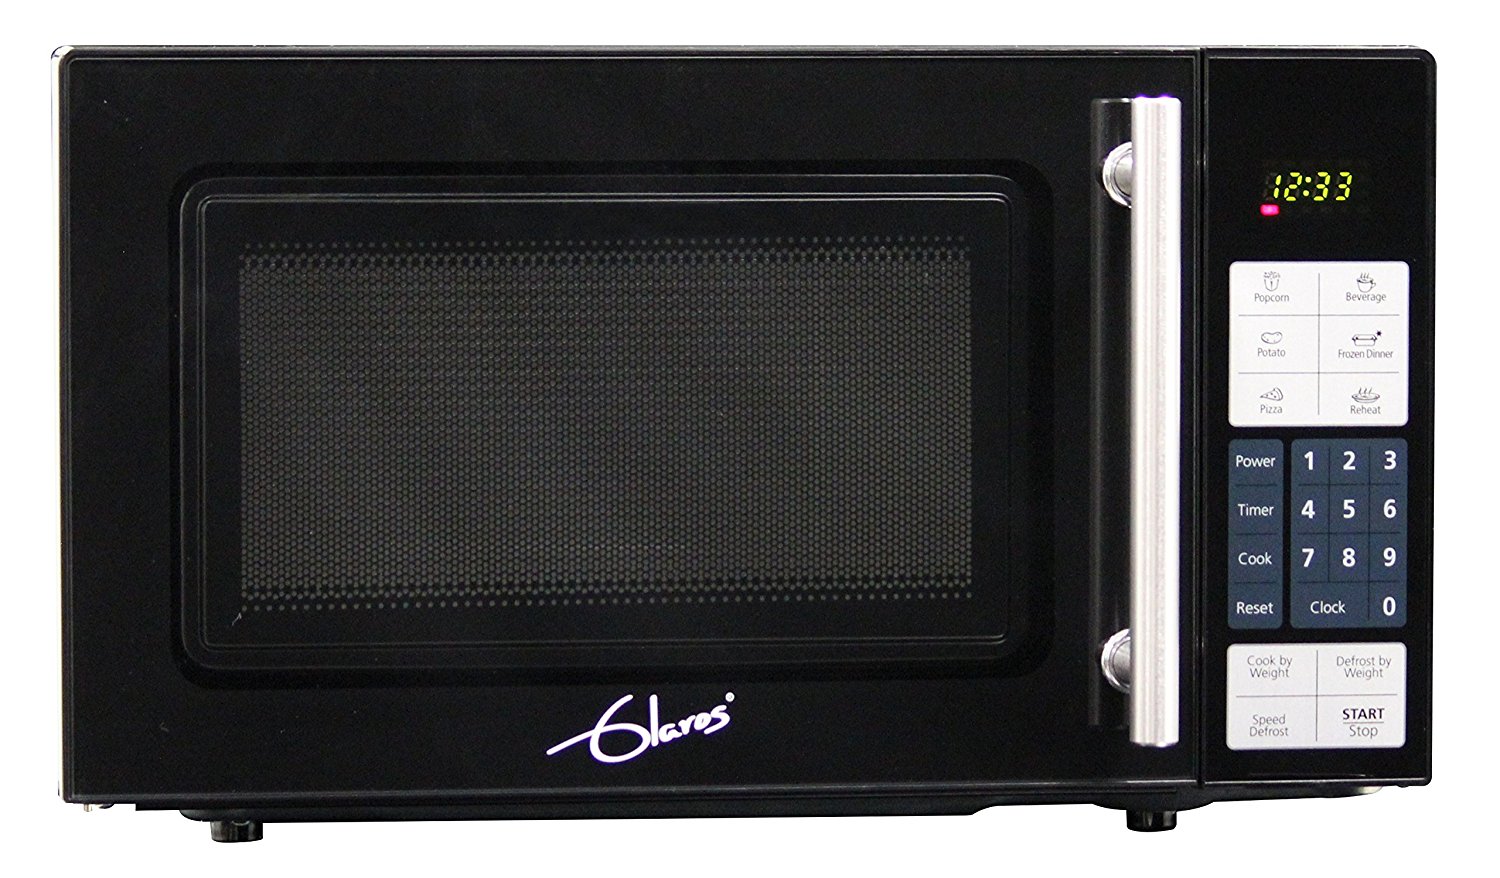 Glaros 700 watt / .7 cu. ft. Sleek Design Countertop Microwave Oven